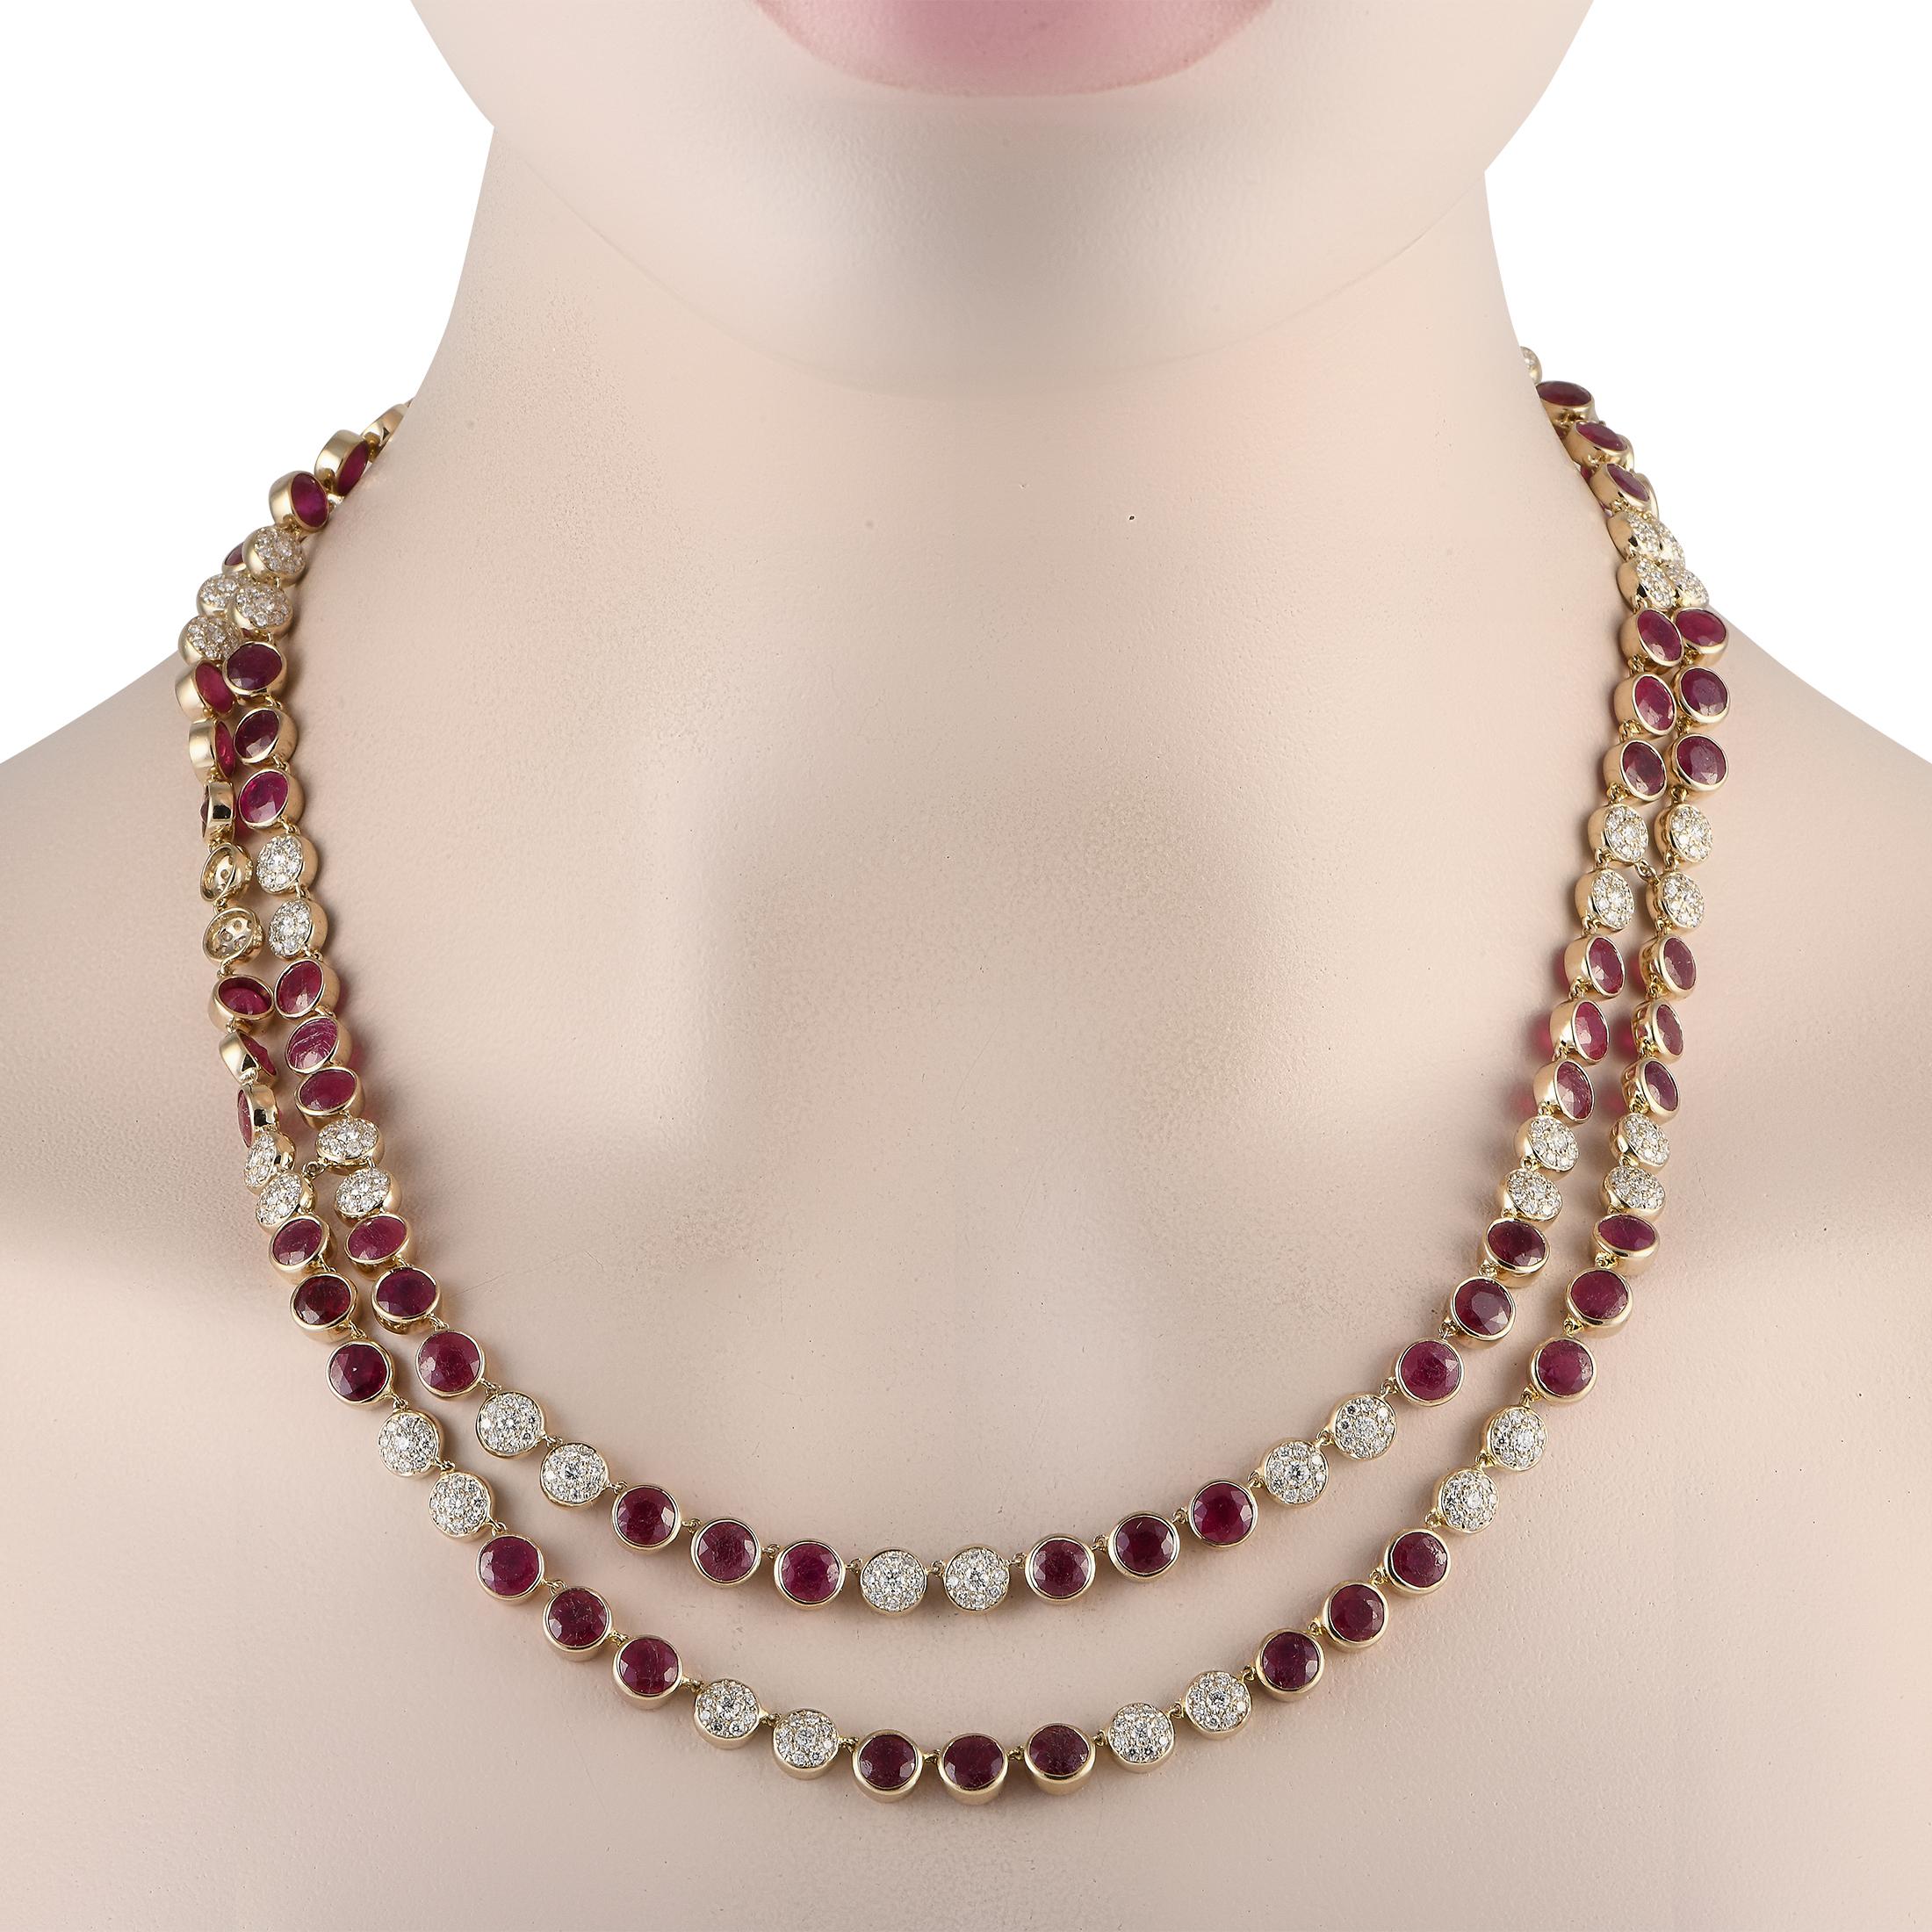 Diese dramatische zweireihige Halskette ist ein luxuriöses Prunkstück, das immer wieder beeindruckt. Rubin-Edelsteine von insgesamt 40,0 Karat wechseln sich mit 6,50 Karat funkelnden Diamant-Akzenten ab. Dieses auffällige Accessoire aus 18 Karat